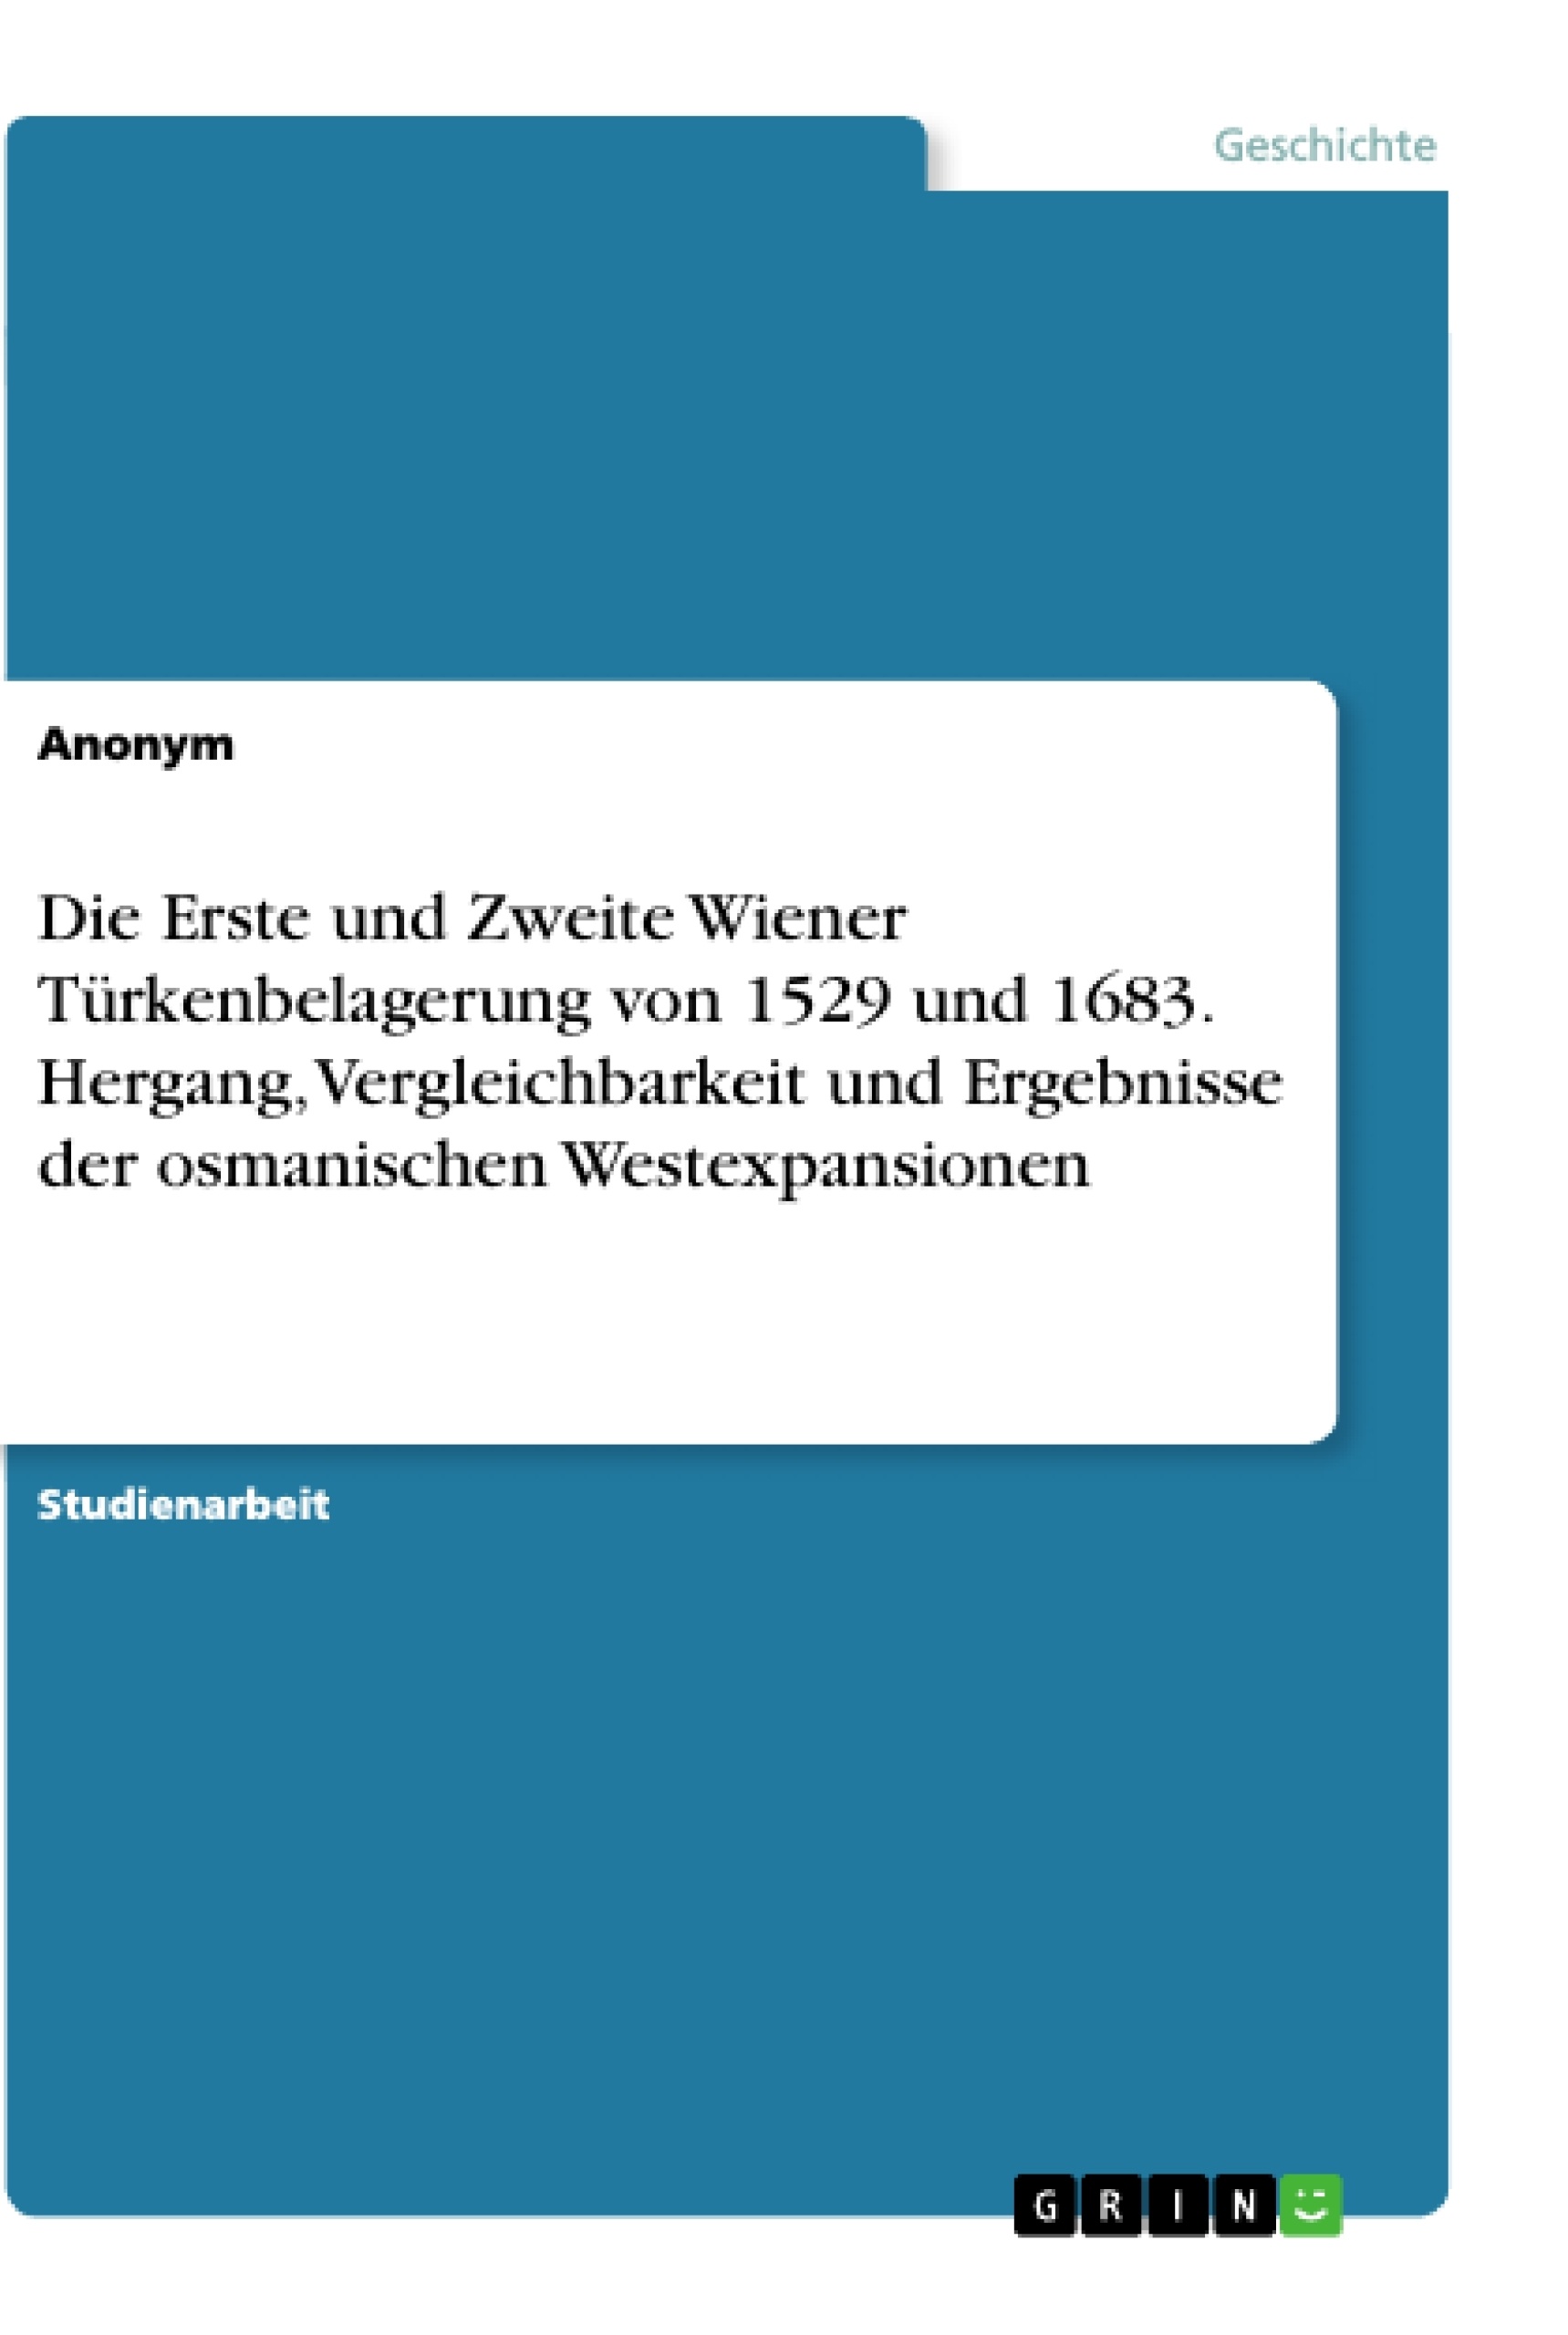 Título: Die Erste und Zweite Wiener Türkenbelagerung von 1529 und 1683. Hergang, Vergleichbarkeit und Ergebnisse der osmanischen Westexpansionen